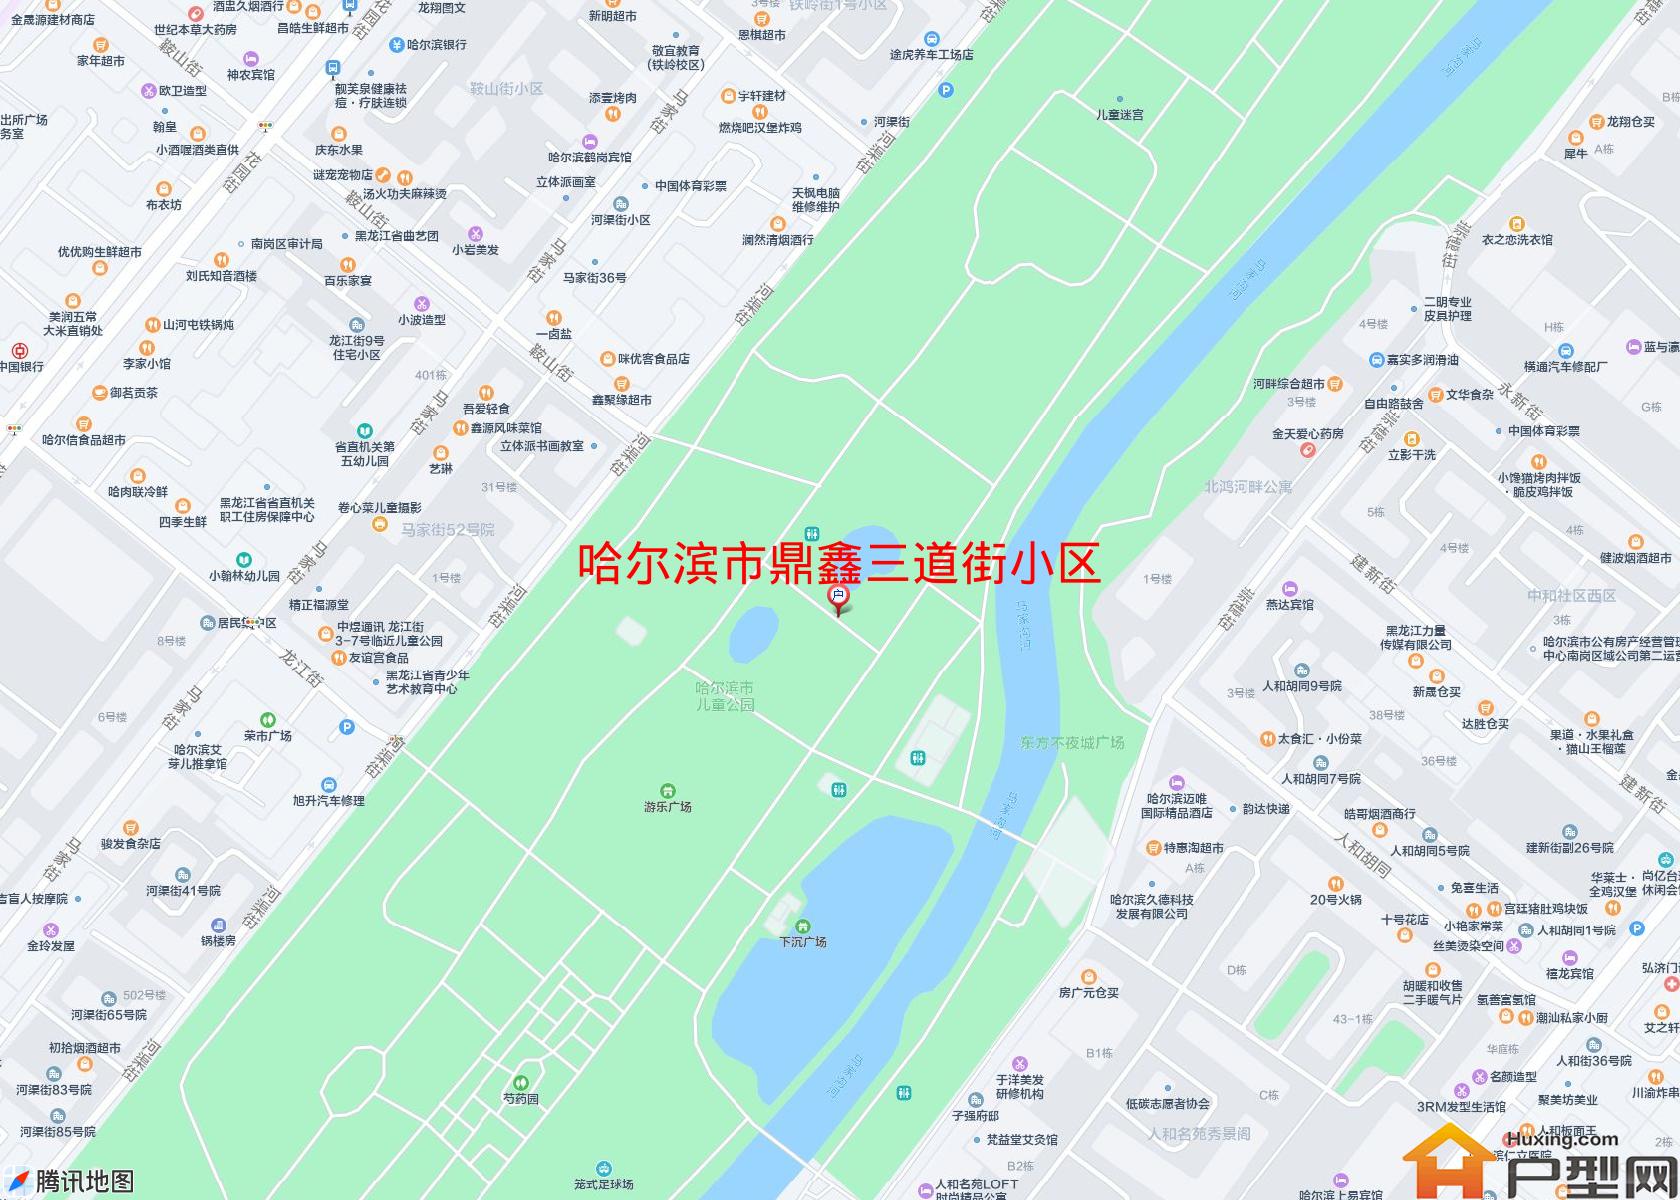 鼎鑫三道街小区小区 - 户型网